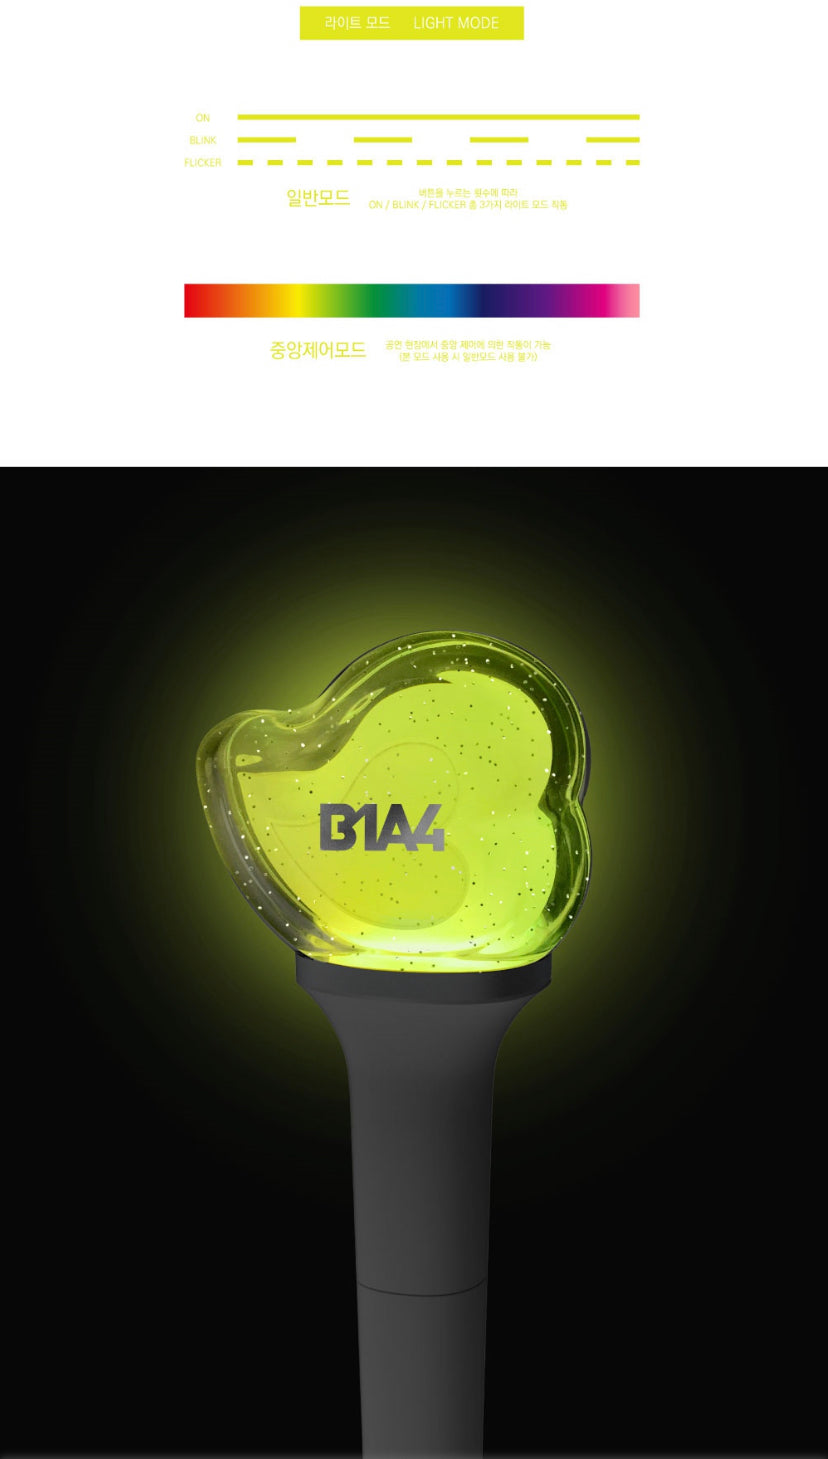 [PRE-ORDER] B1A4 - OFFICIAL LIGHTSTICK